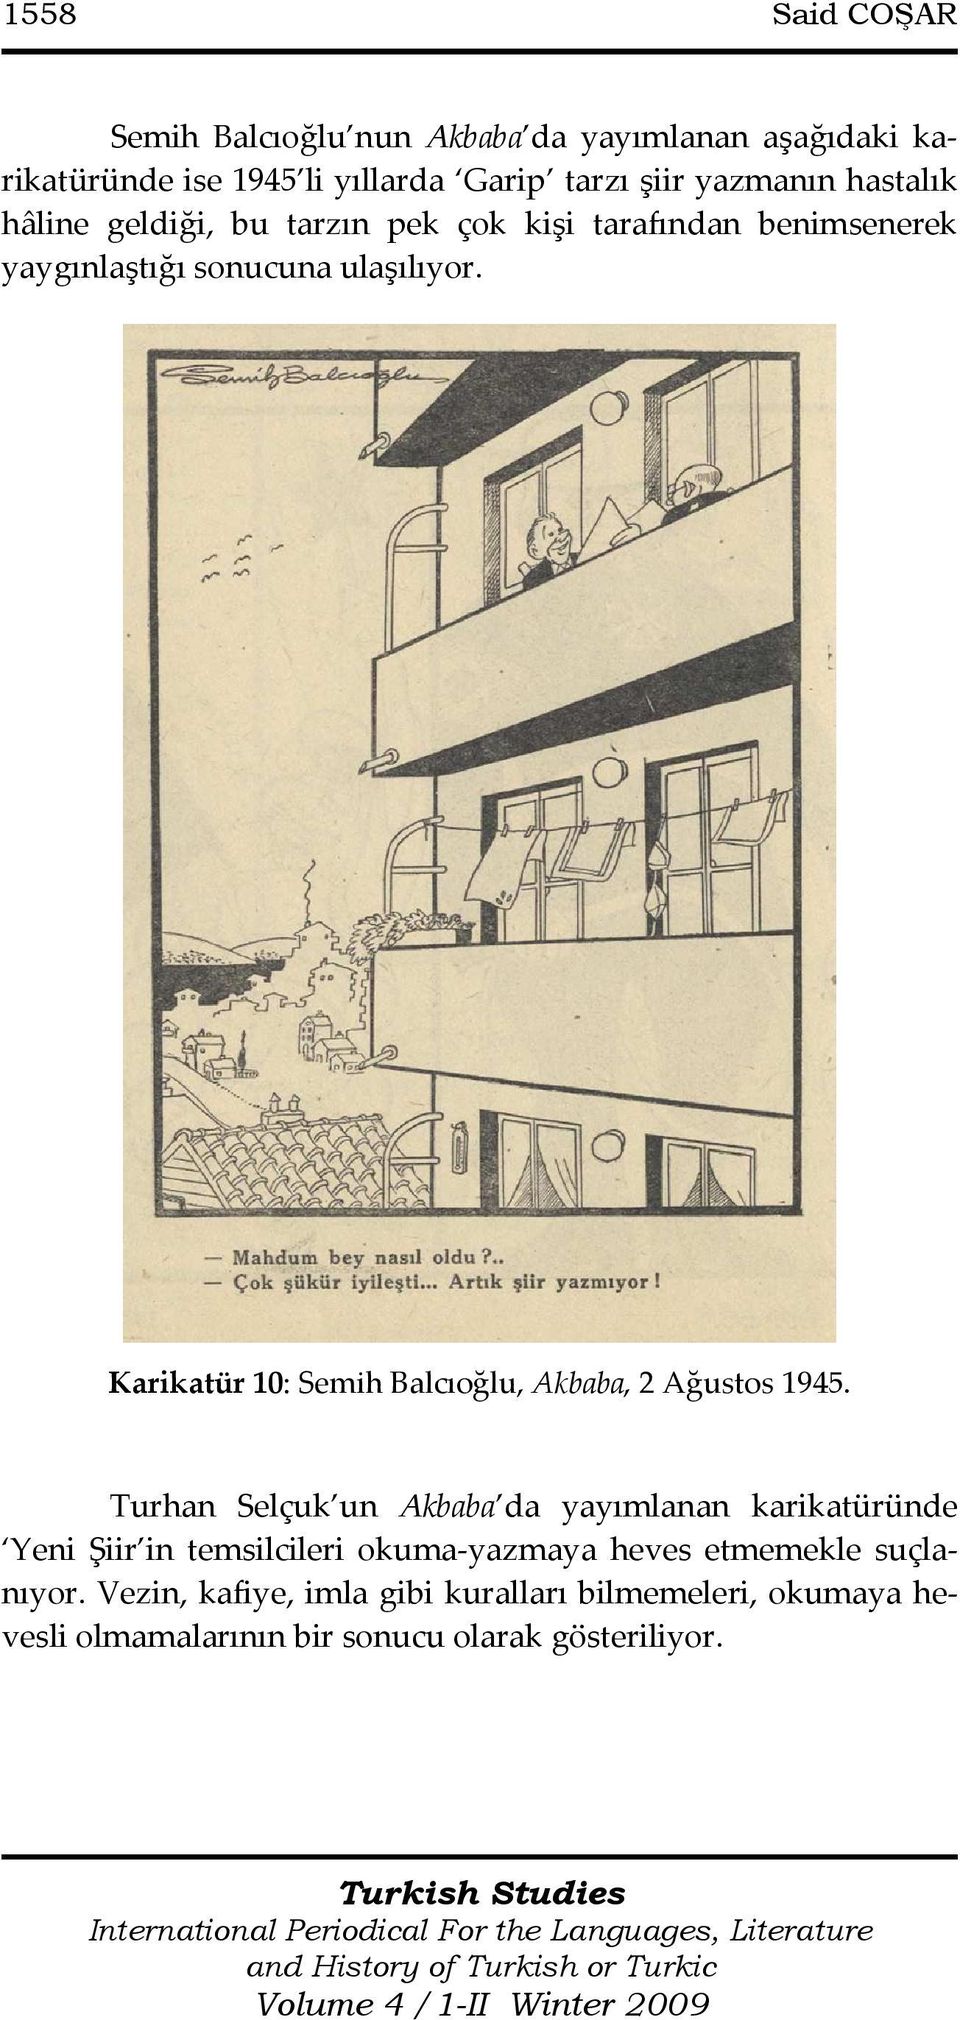 Karikatür 10: Semih Balcıoğlu, Akbaba, 2 Ağustos 1945.